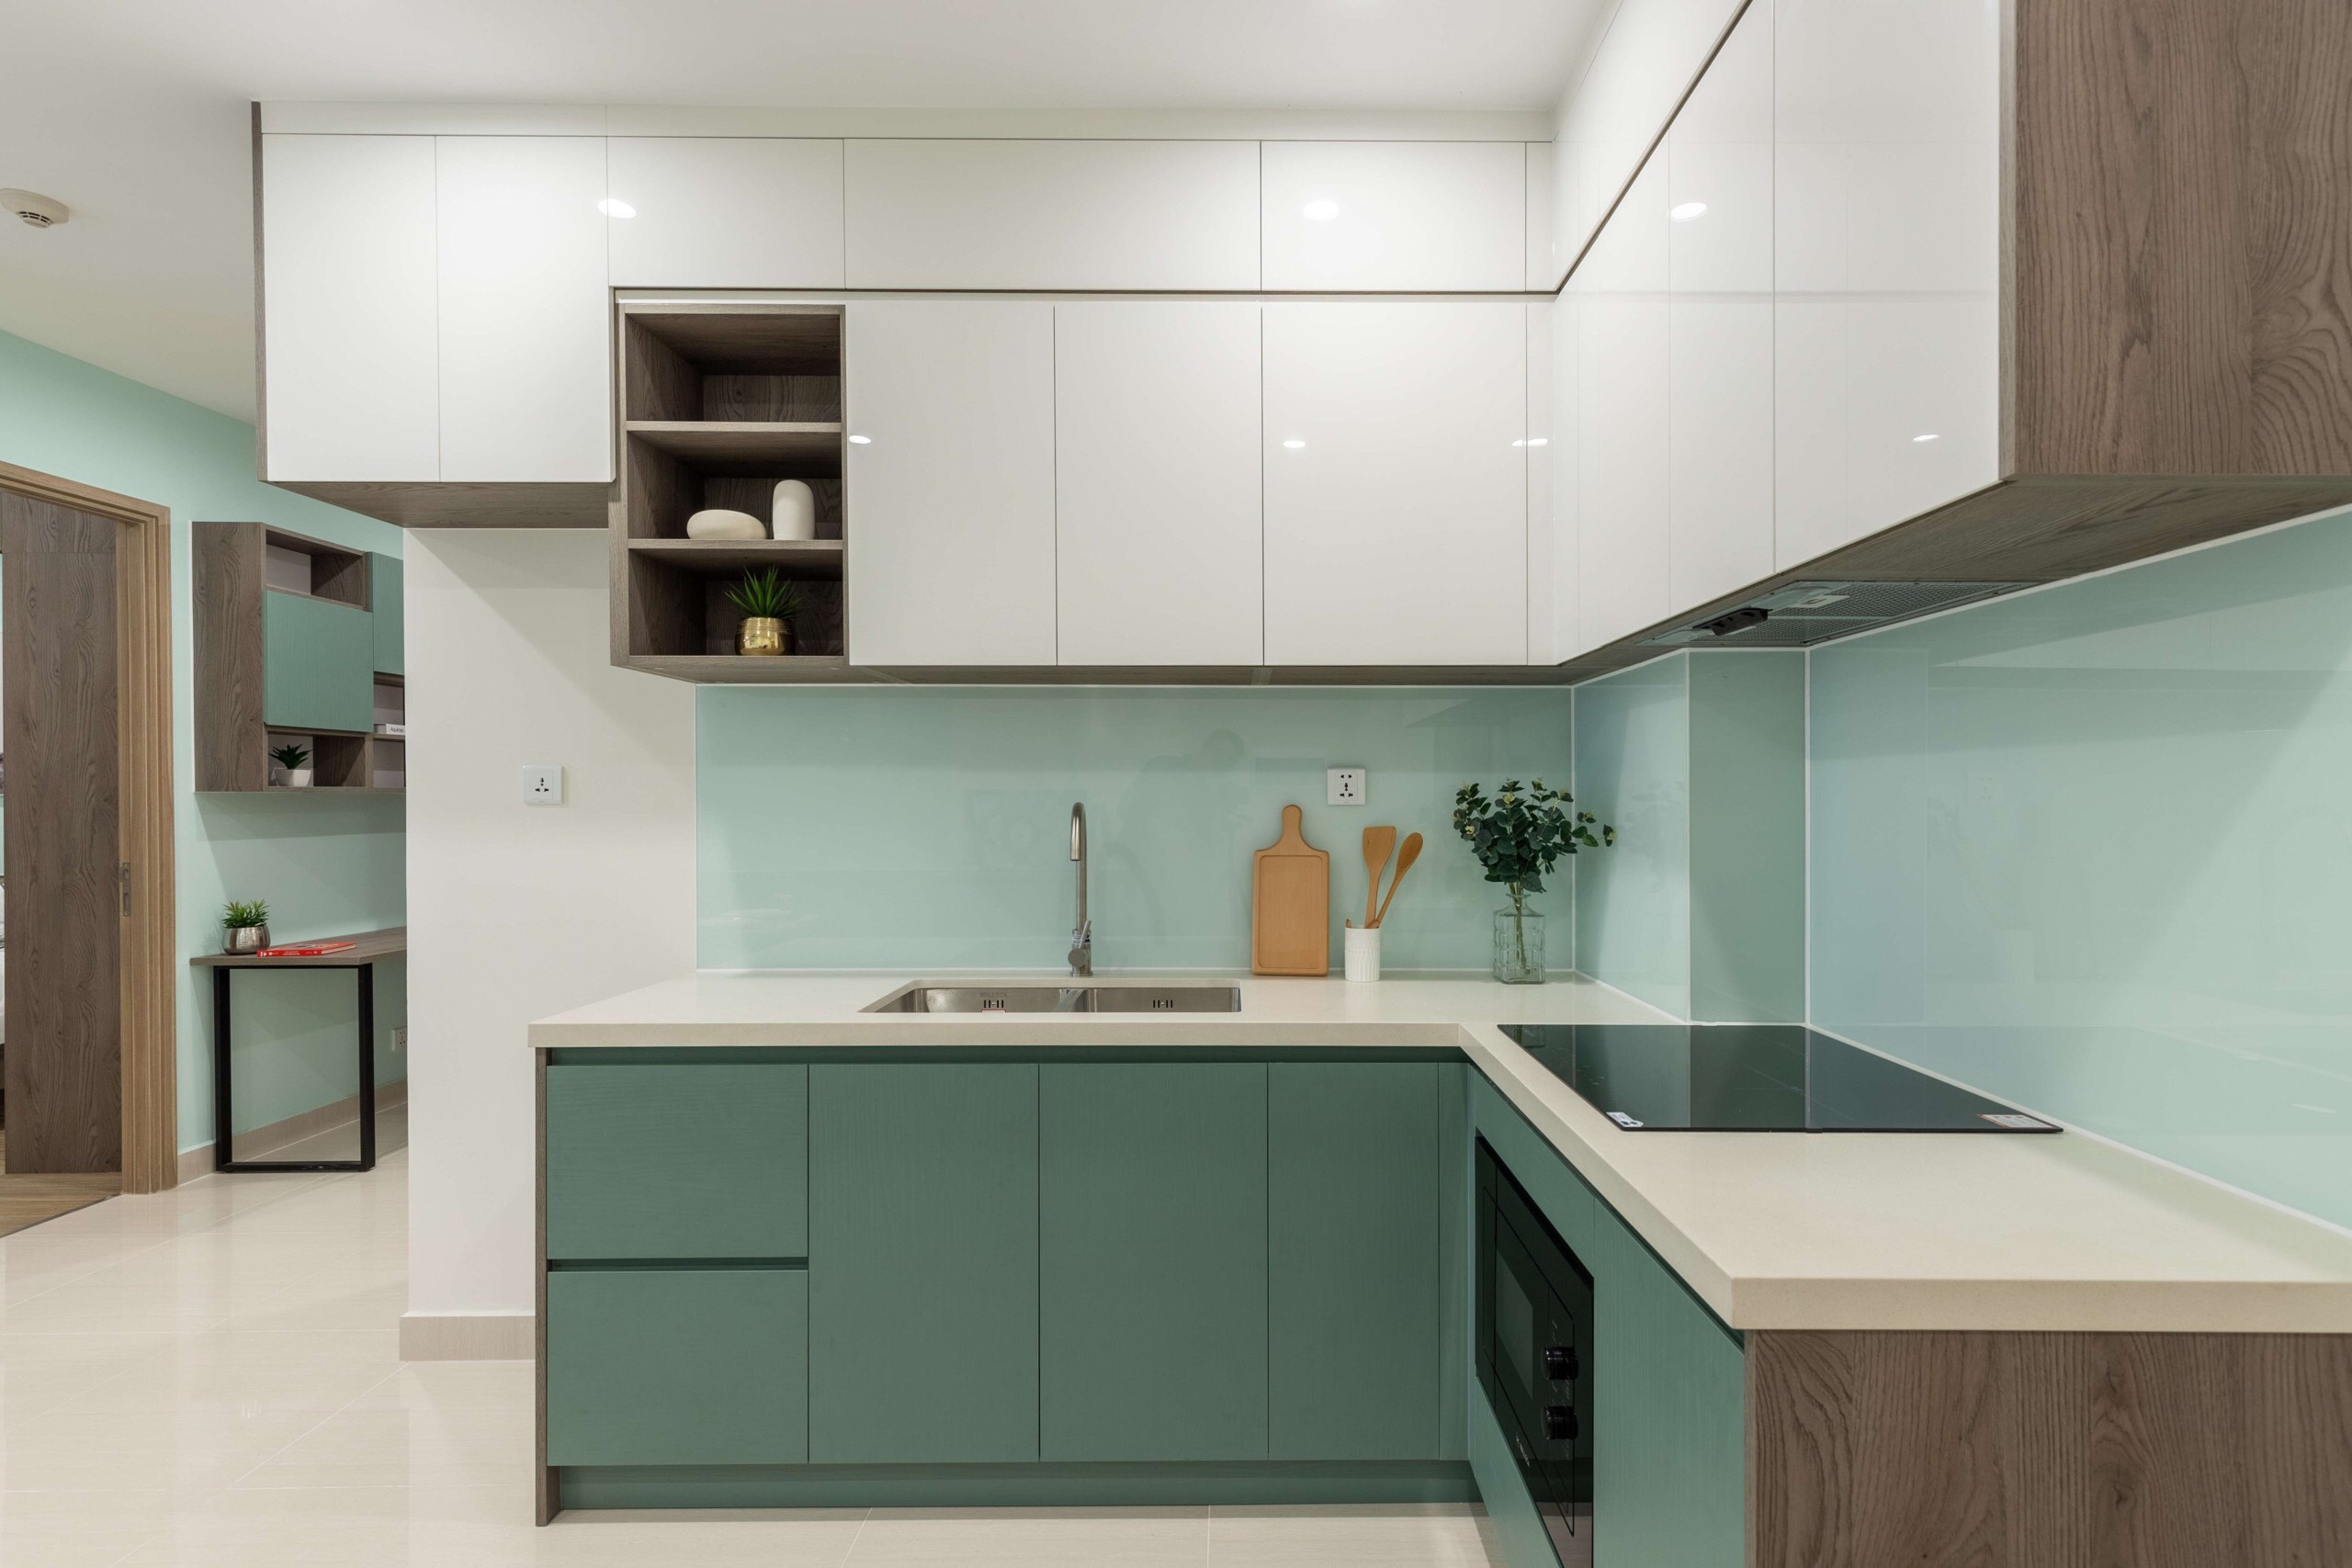 Tủ bếp chung cư bằng gỗ Acrylic tông màu trắng xanh trẻ trung